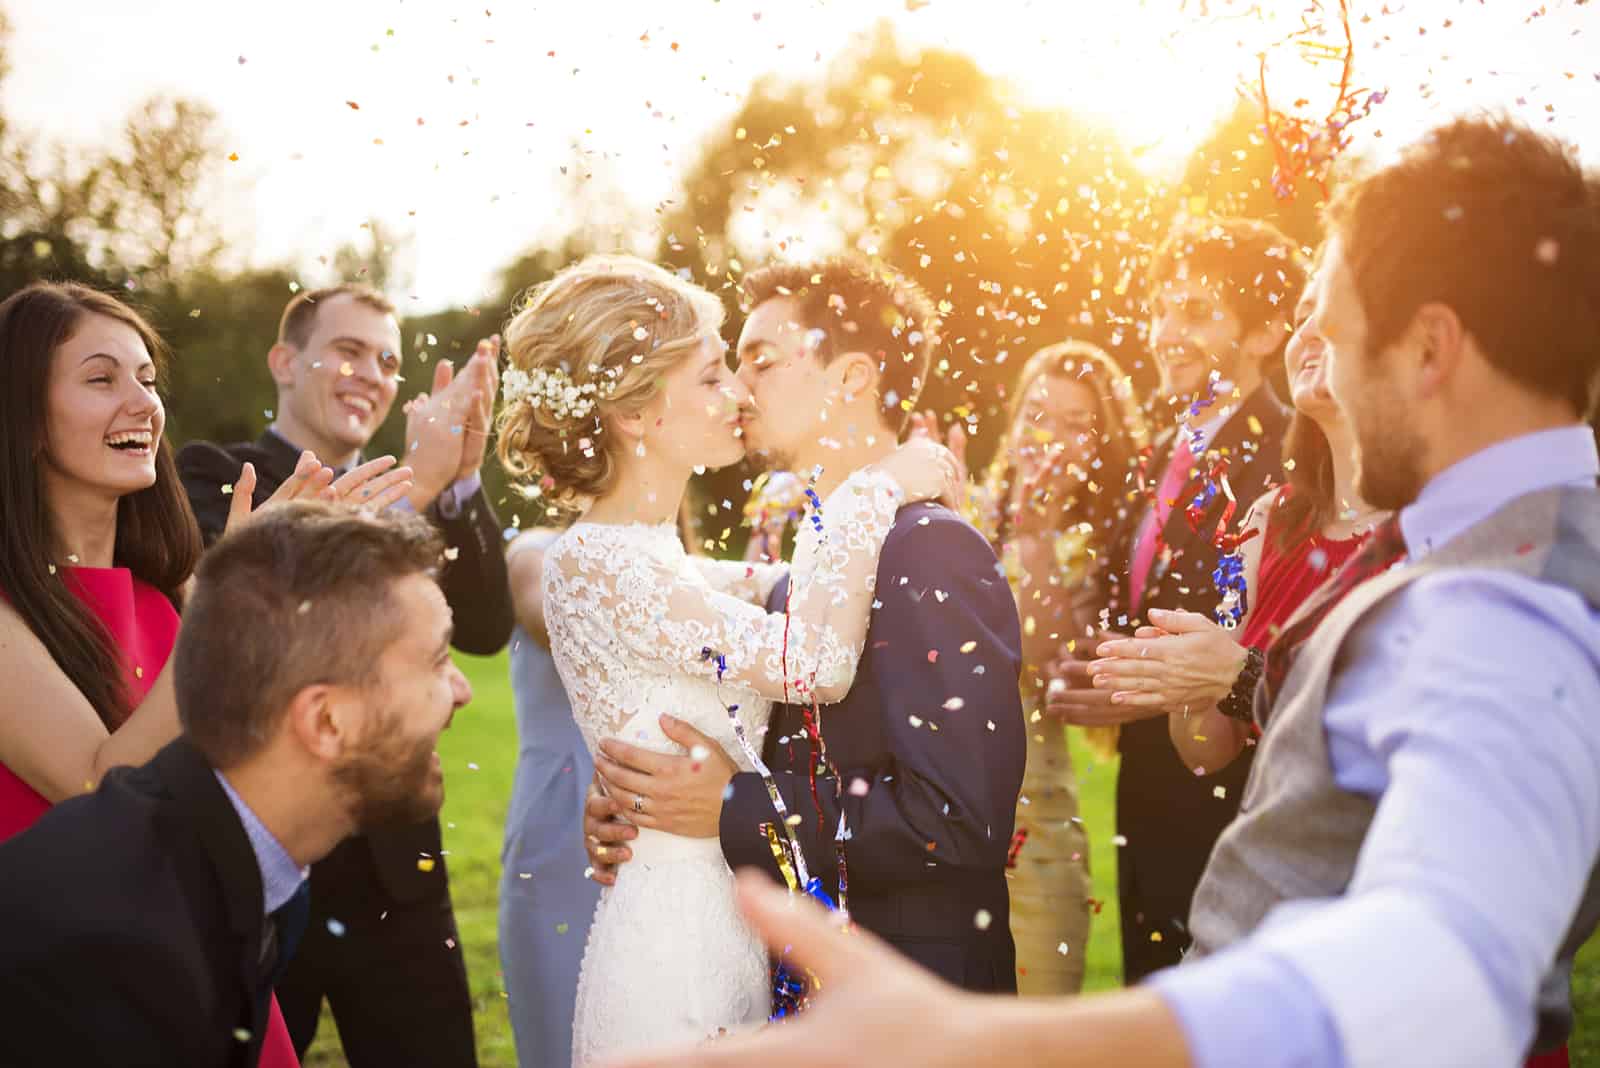 Jungvermähltenpaar und ihre Freunde auf der Hochzeitsfeier duschten mit Konfetti im grünen, sonnigen Park